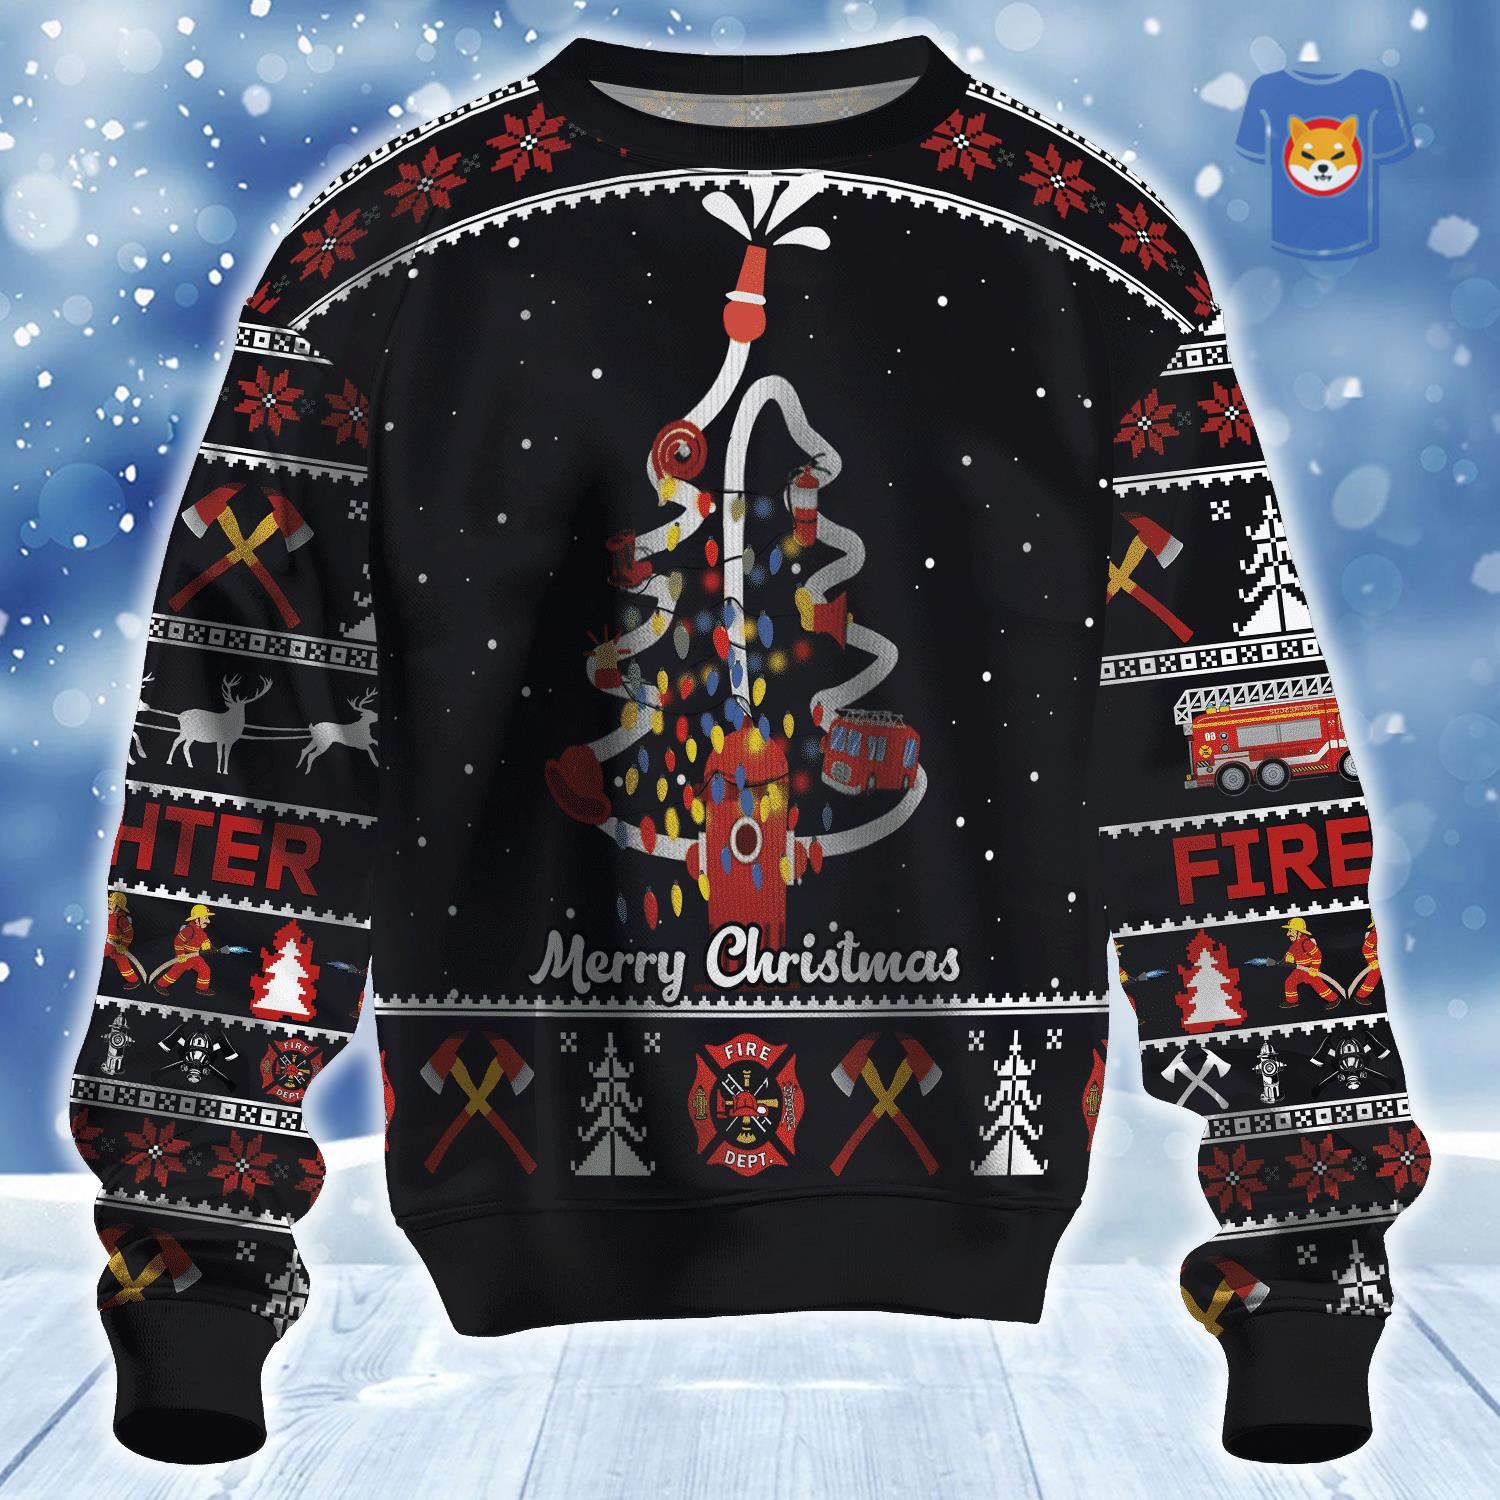 Christmas Tree Ugly Christmas Sweater 